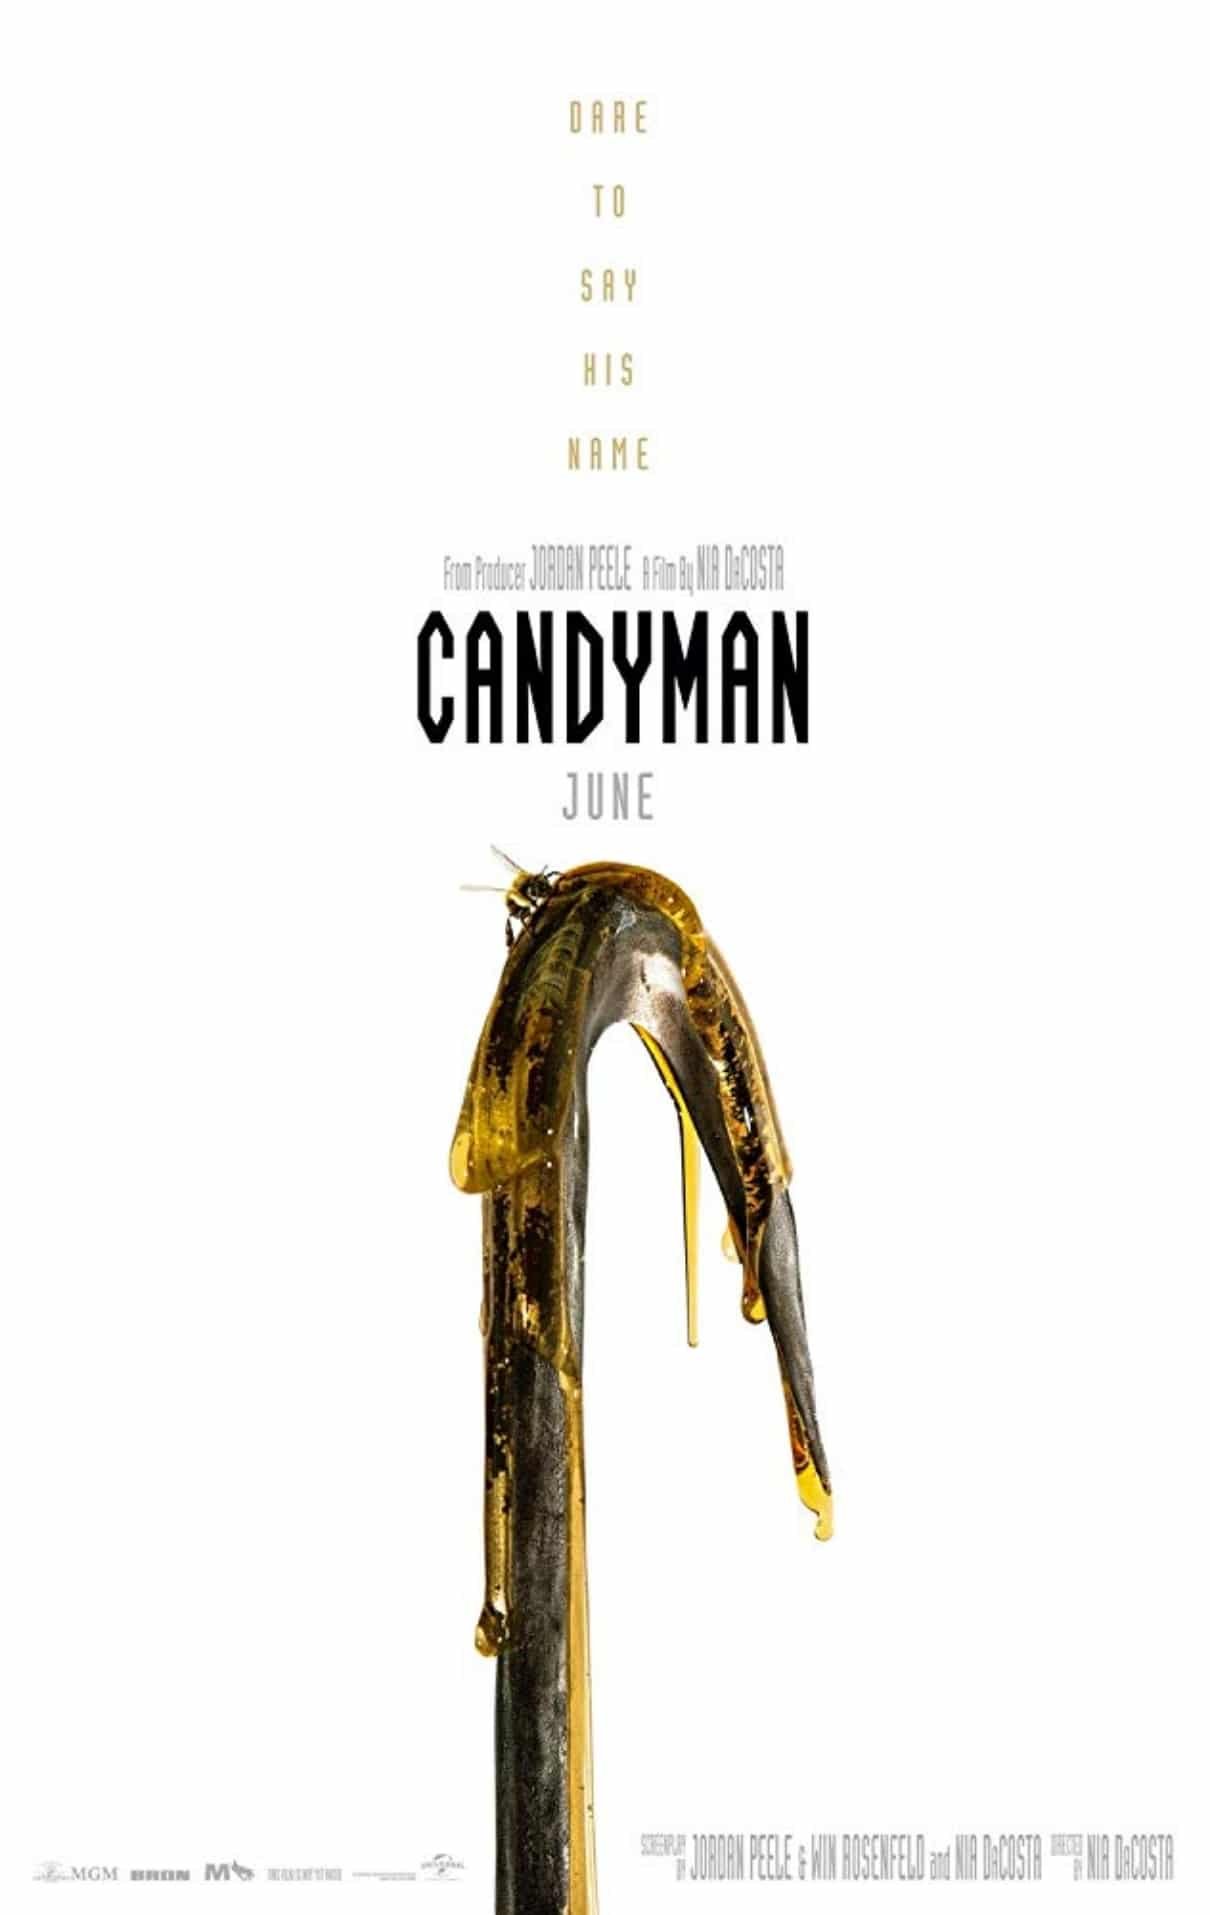 Vi nos Filmes - No filme O Mistério de Candyman (1992), Tony Todd